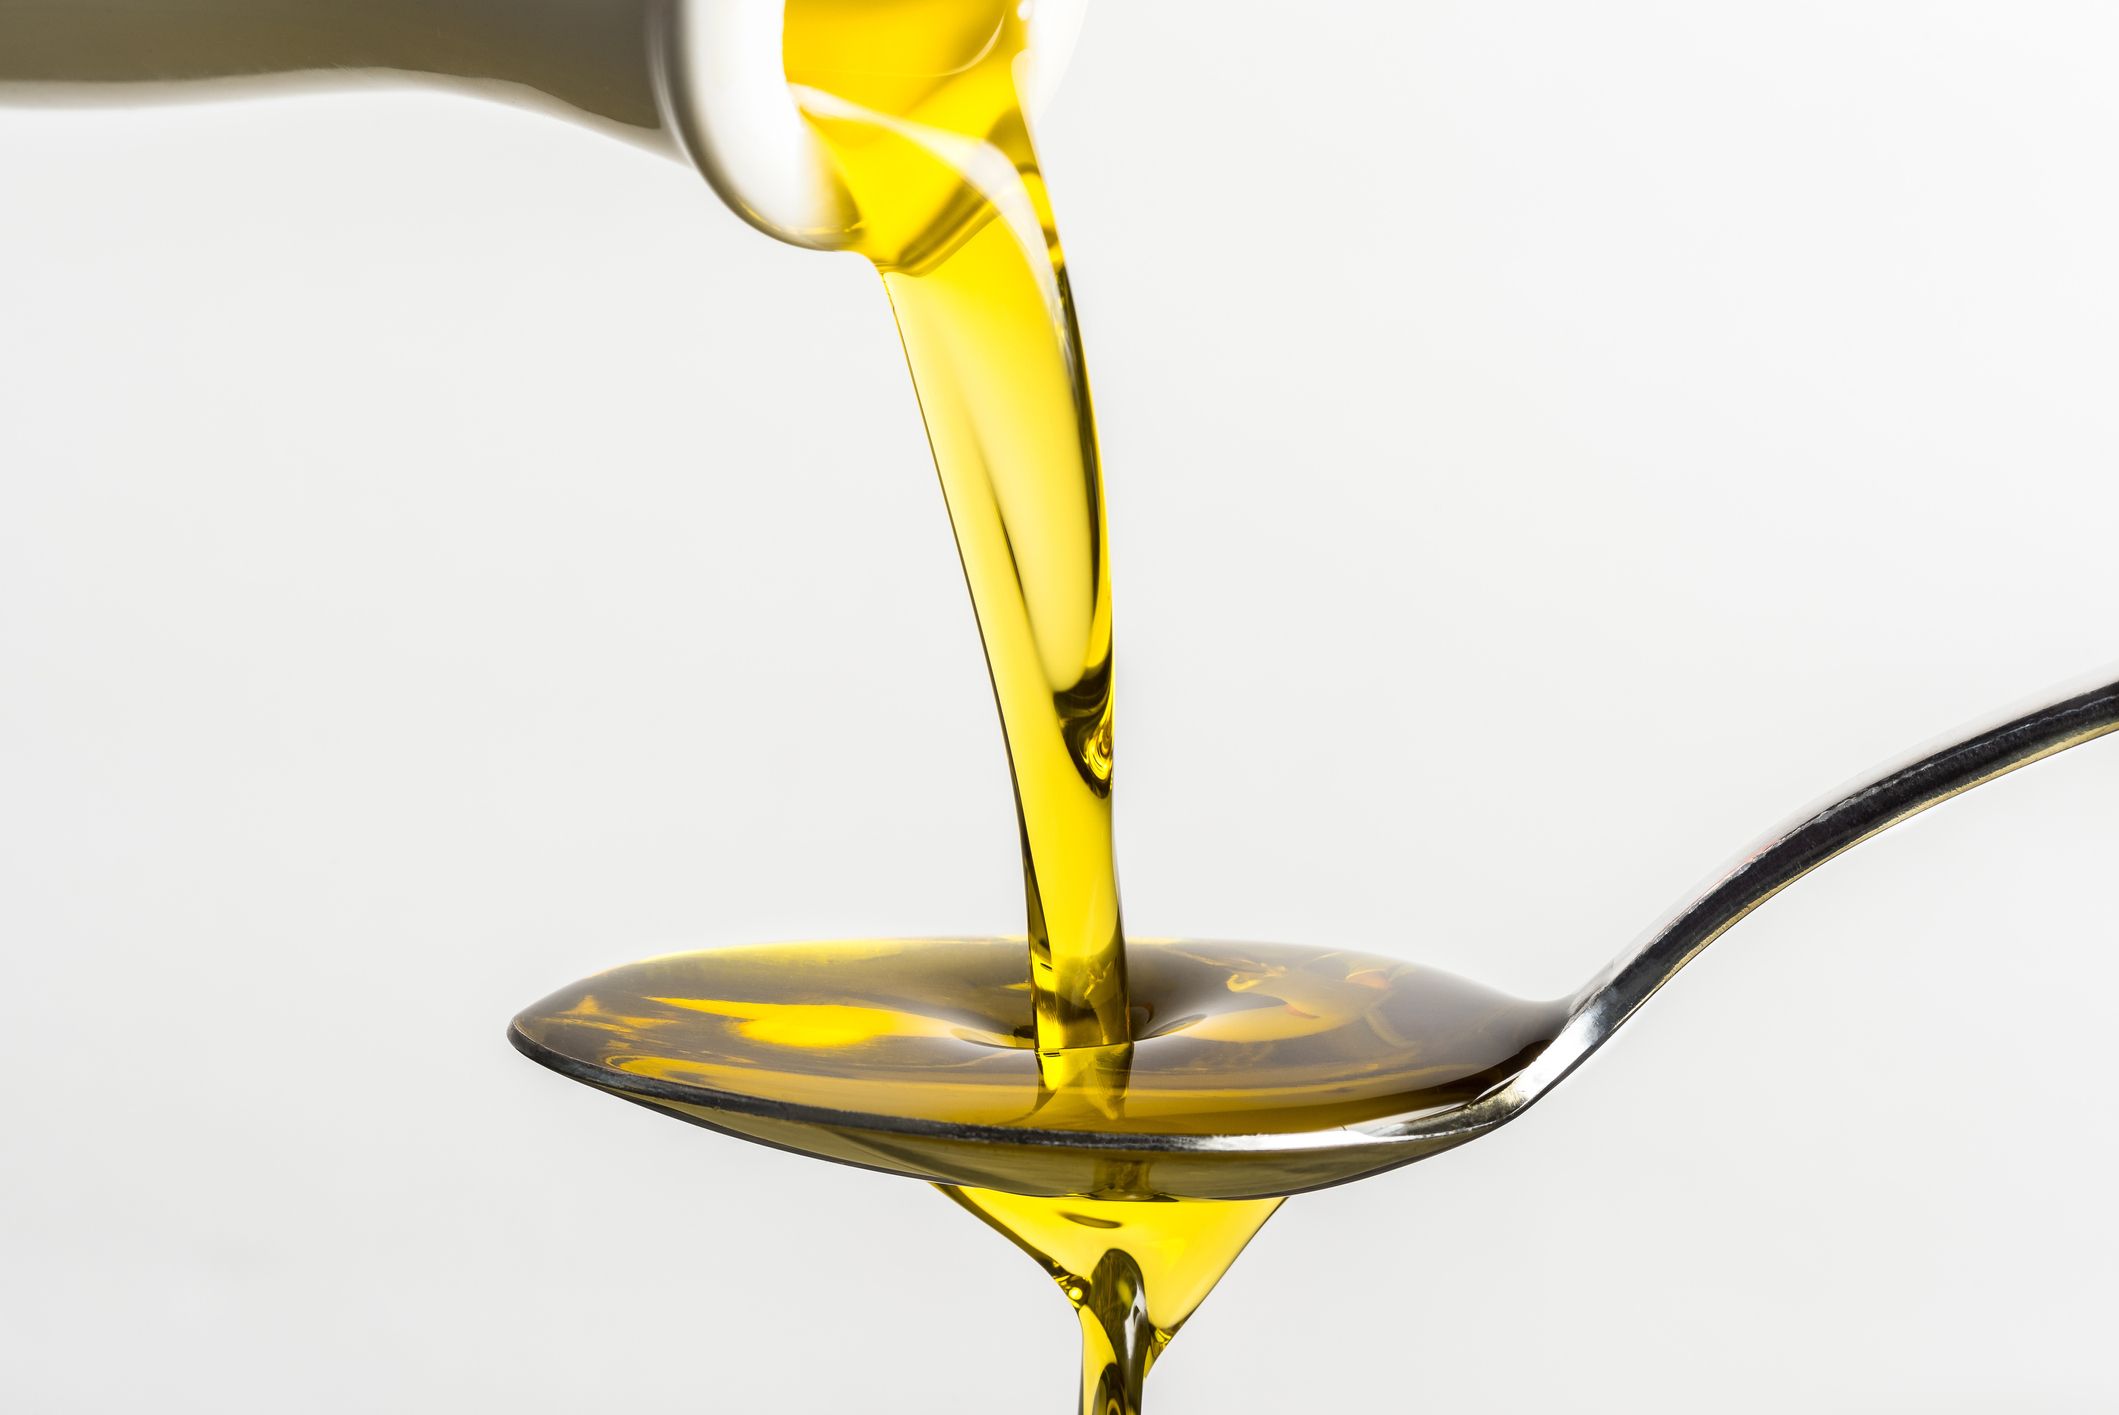 Efecto adelgazante con aceite de oliva y limón